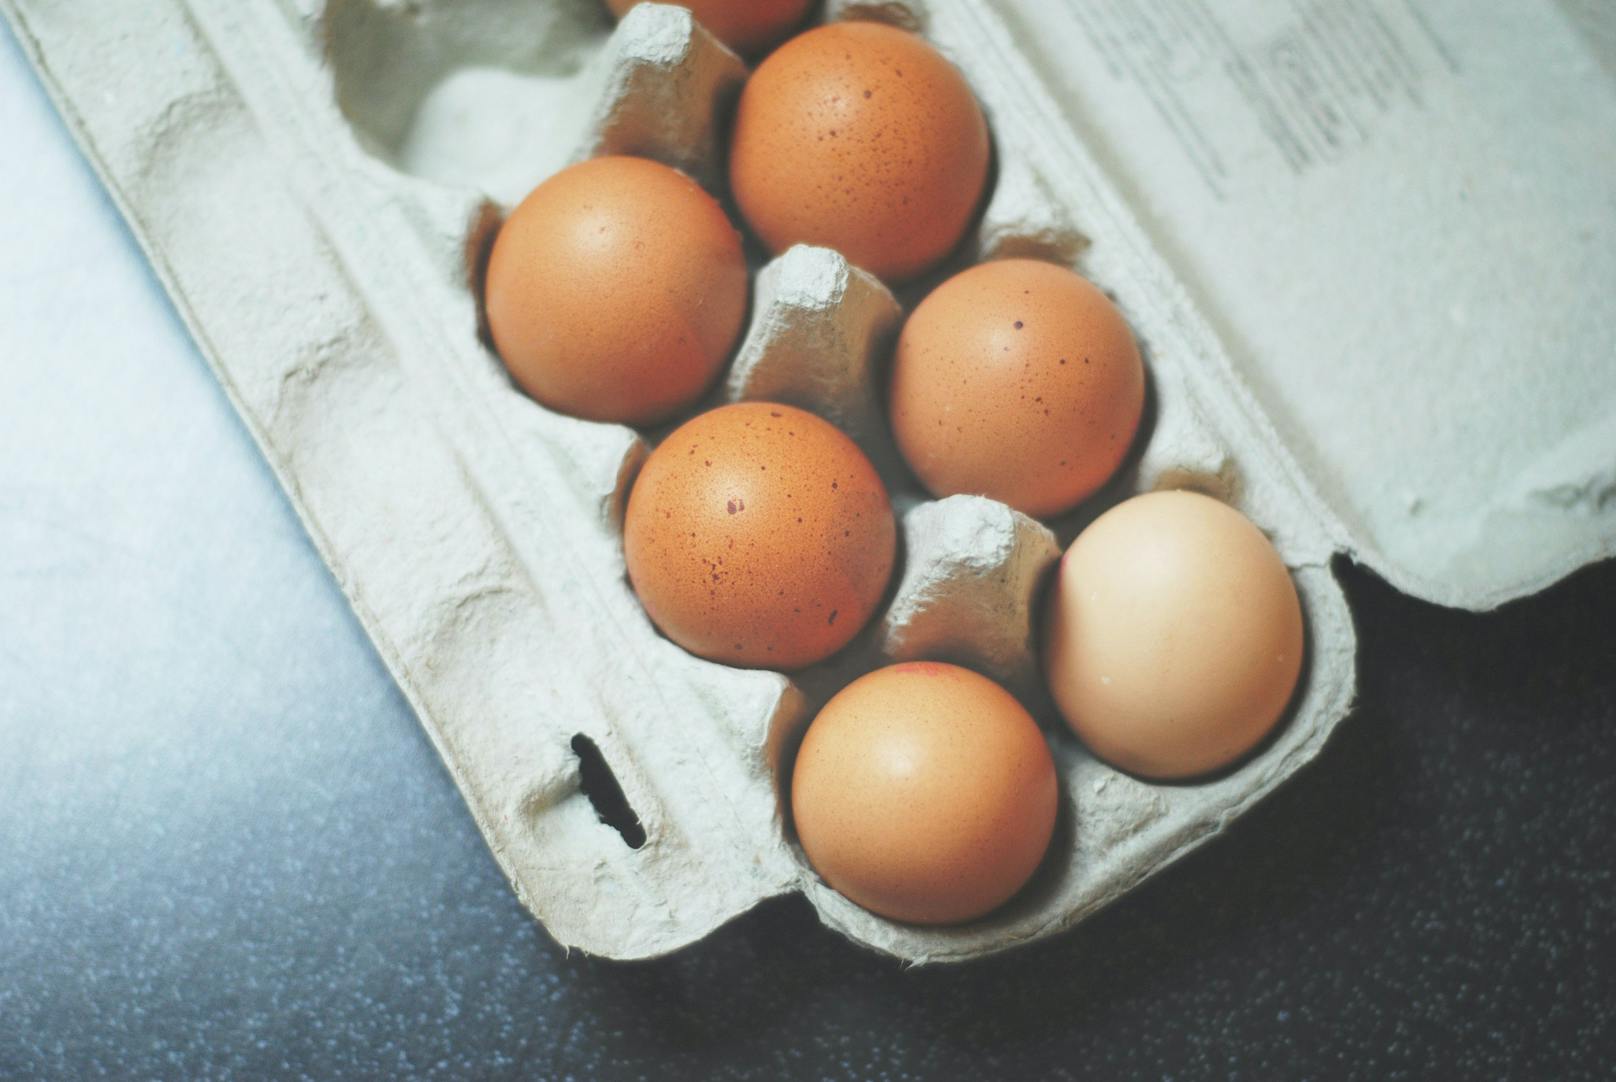 Die Eierproduzenten klagen über mangelnden Absatz. Höhere Preise sollen das Gewerbe retten.